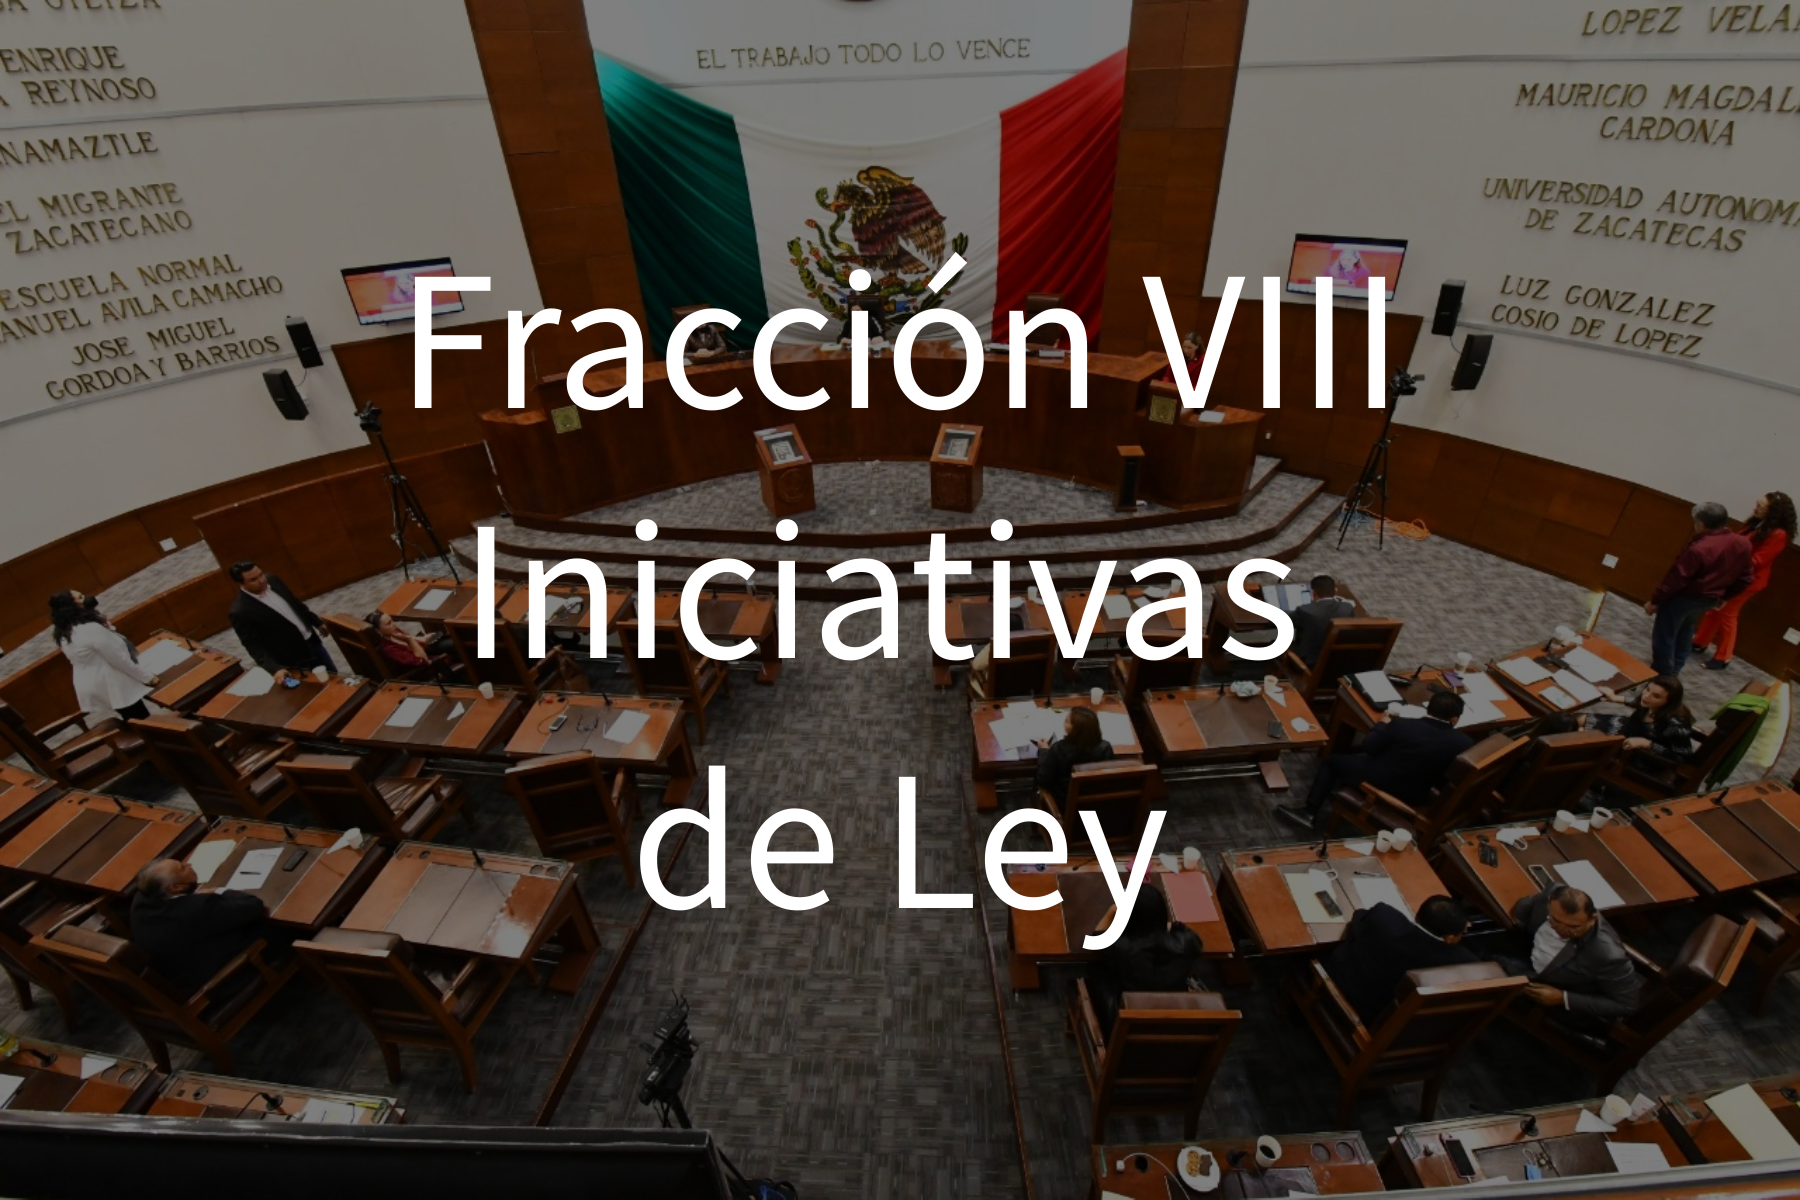 Fracción VIII Iniciativas de ley